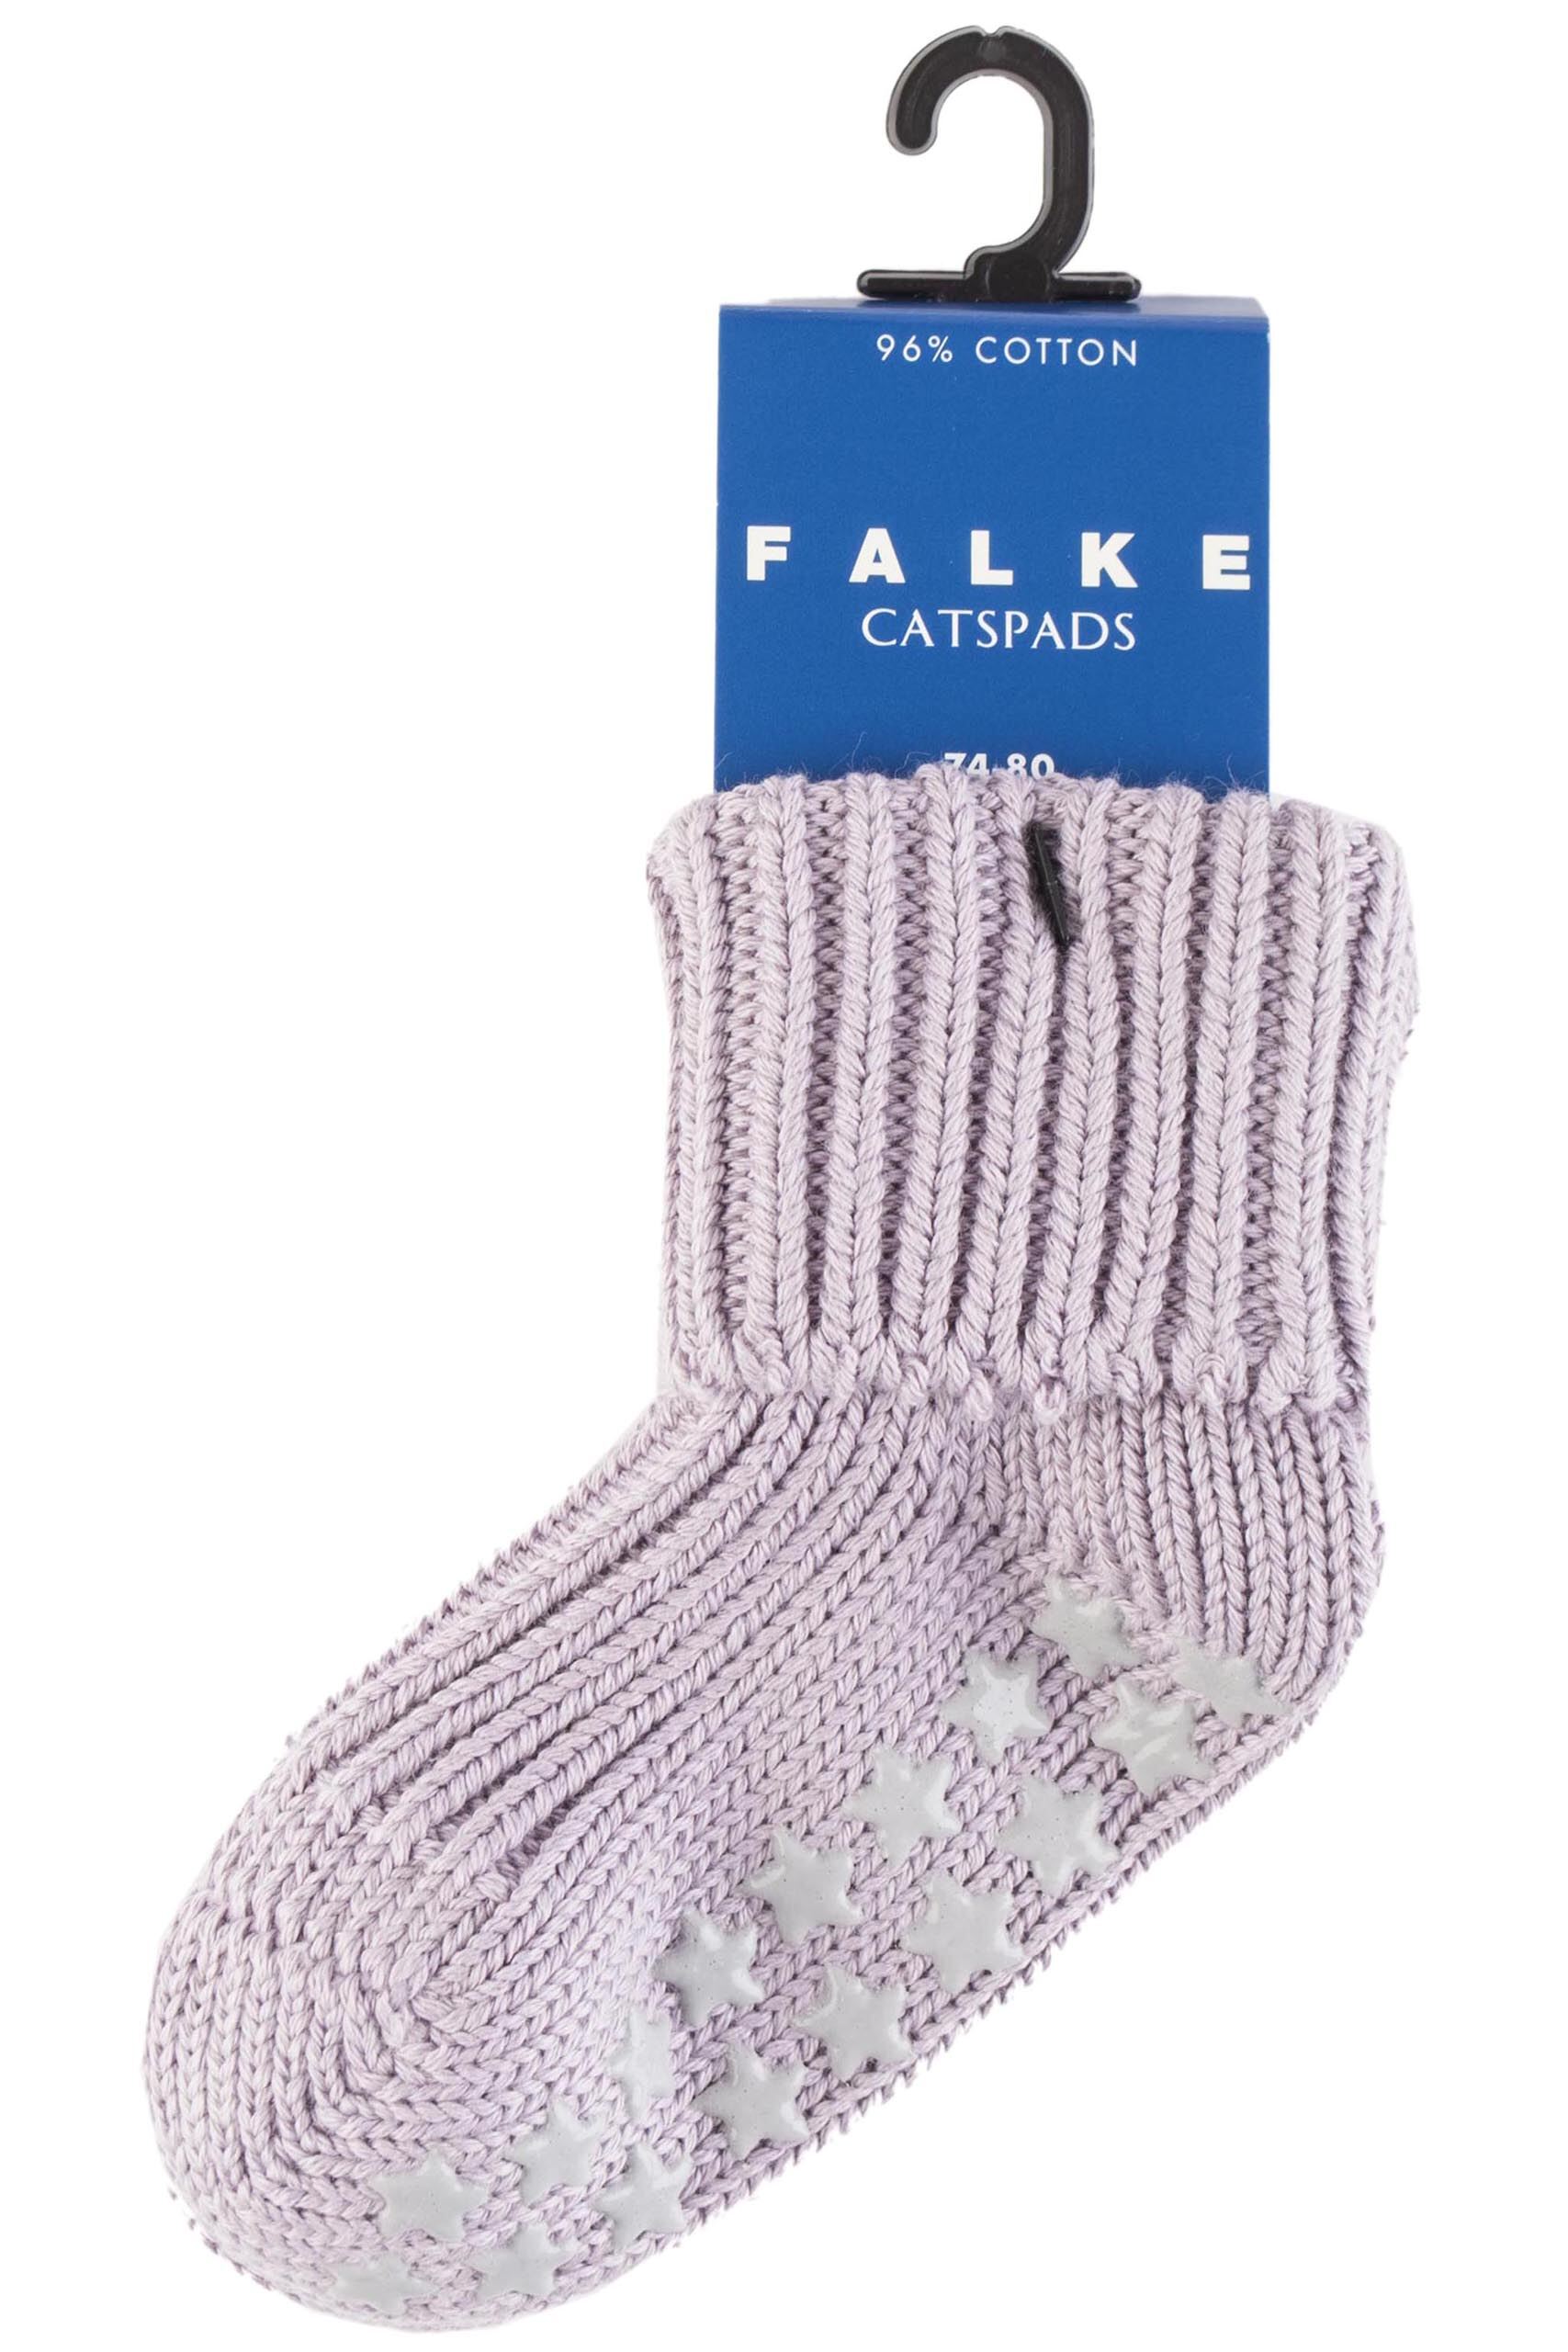  Falke Catspads Slipper Socks